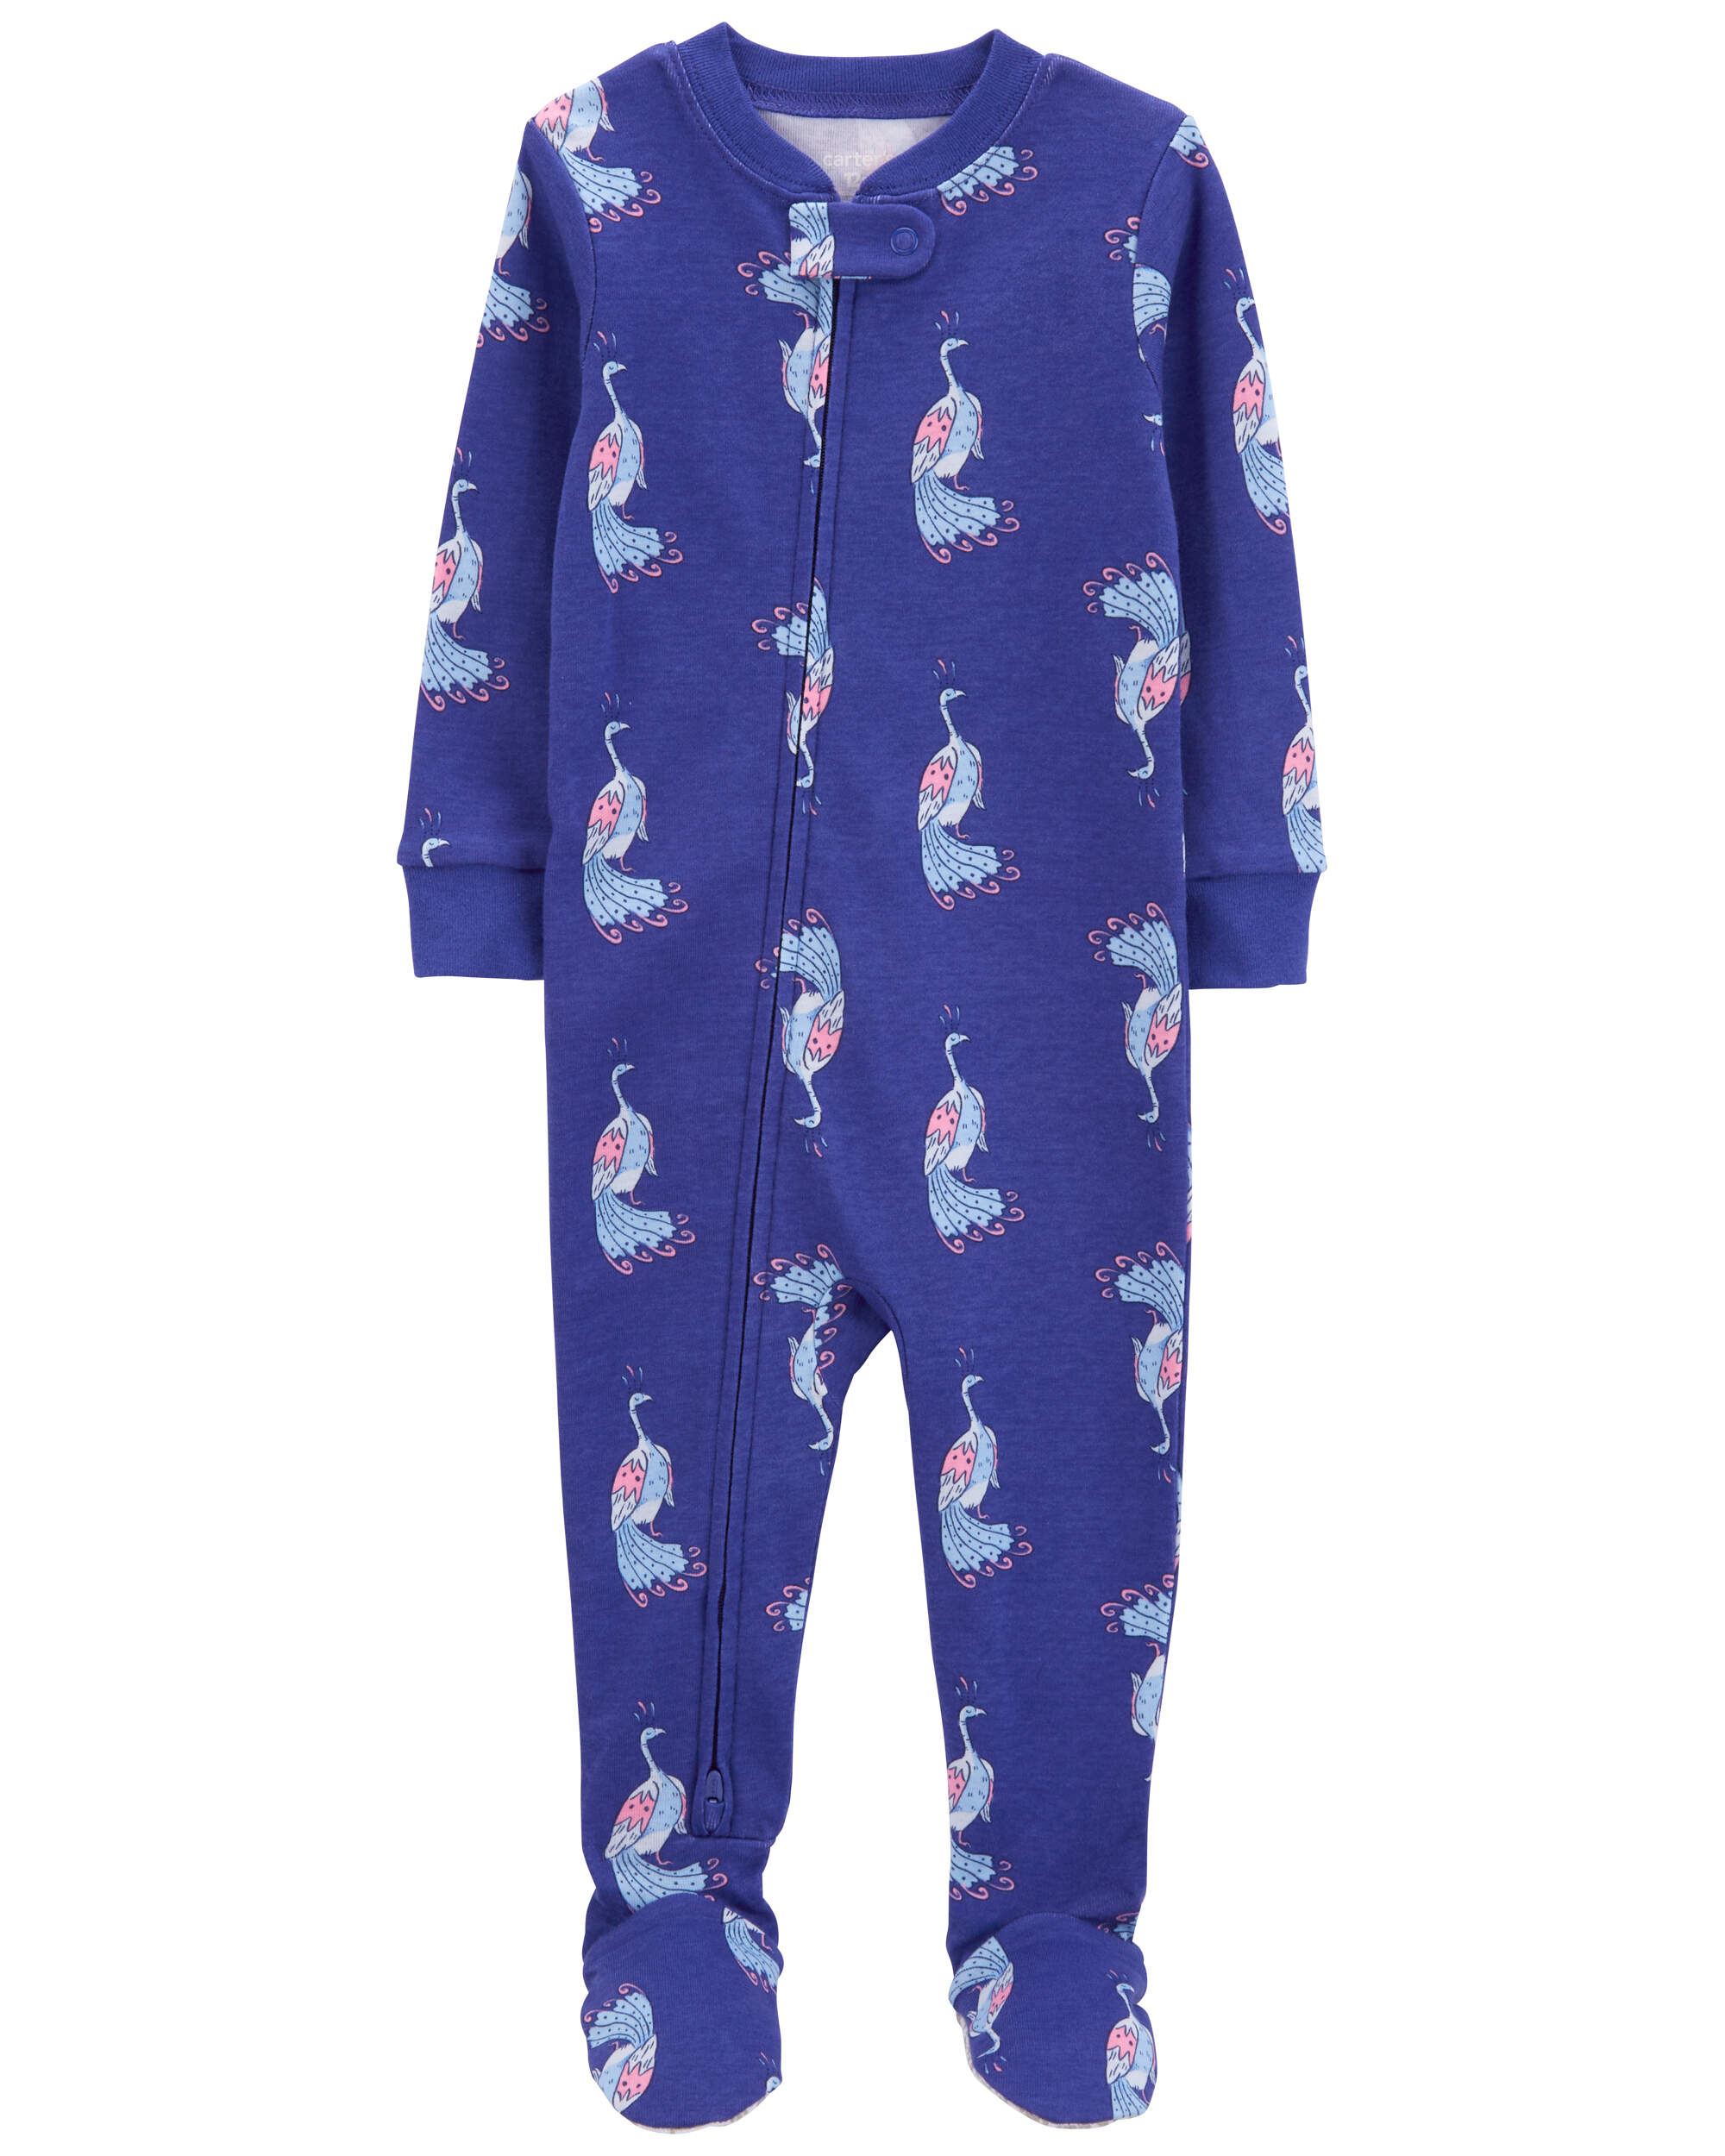 Toddler 1-Piece Peacock 100% Snug Fit Cotton Footie Pajamas